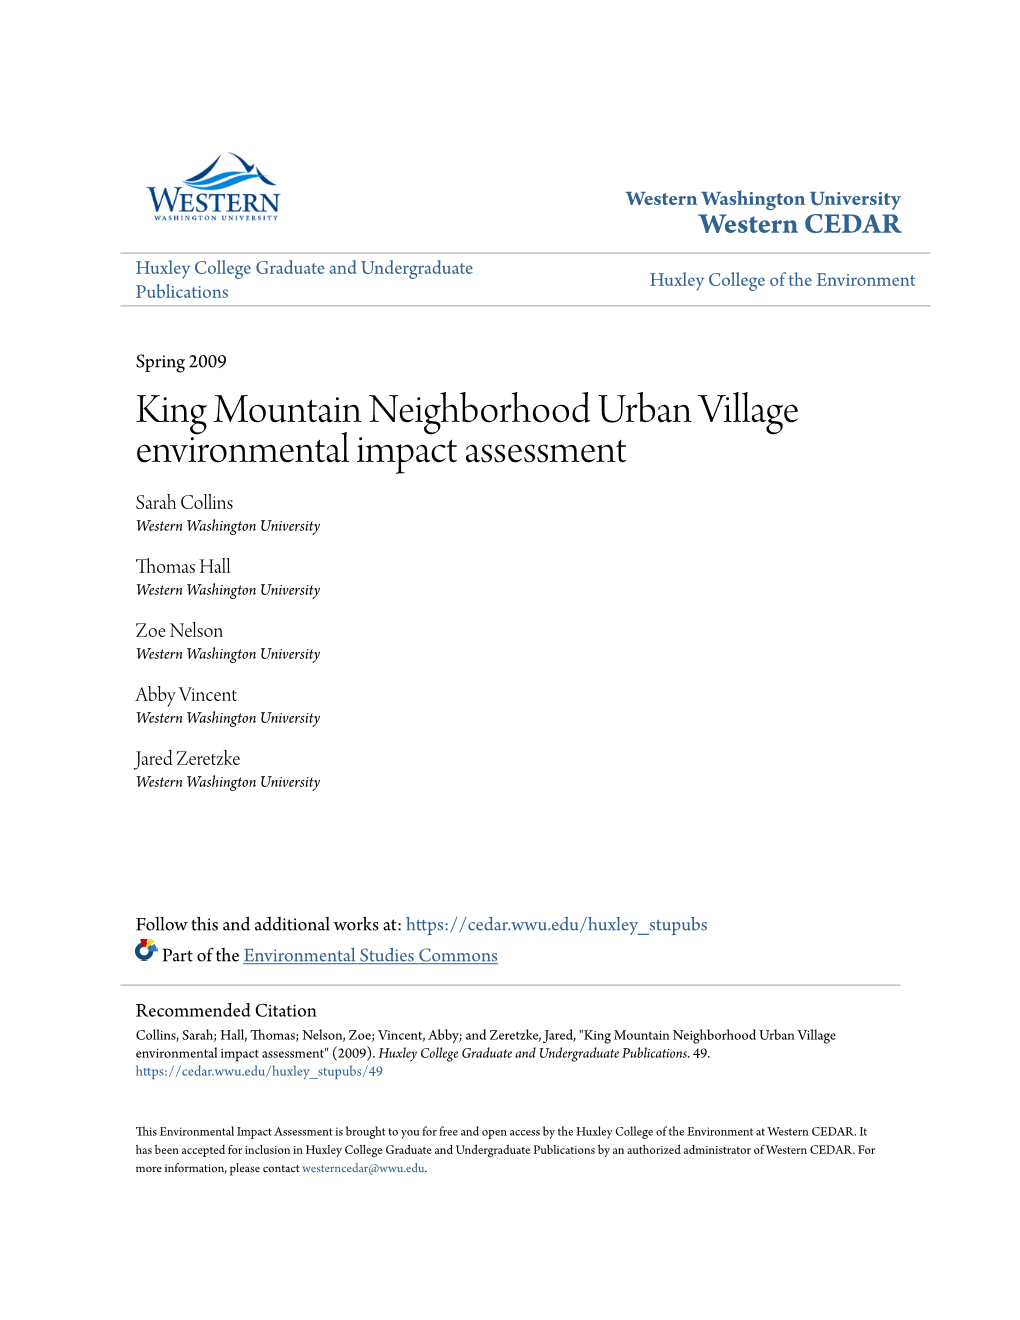 King Mountain Neighborhood Urban Village Environmental Impact Assessment Sarah Collins Western Washington University